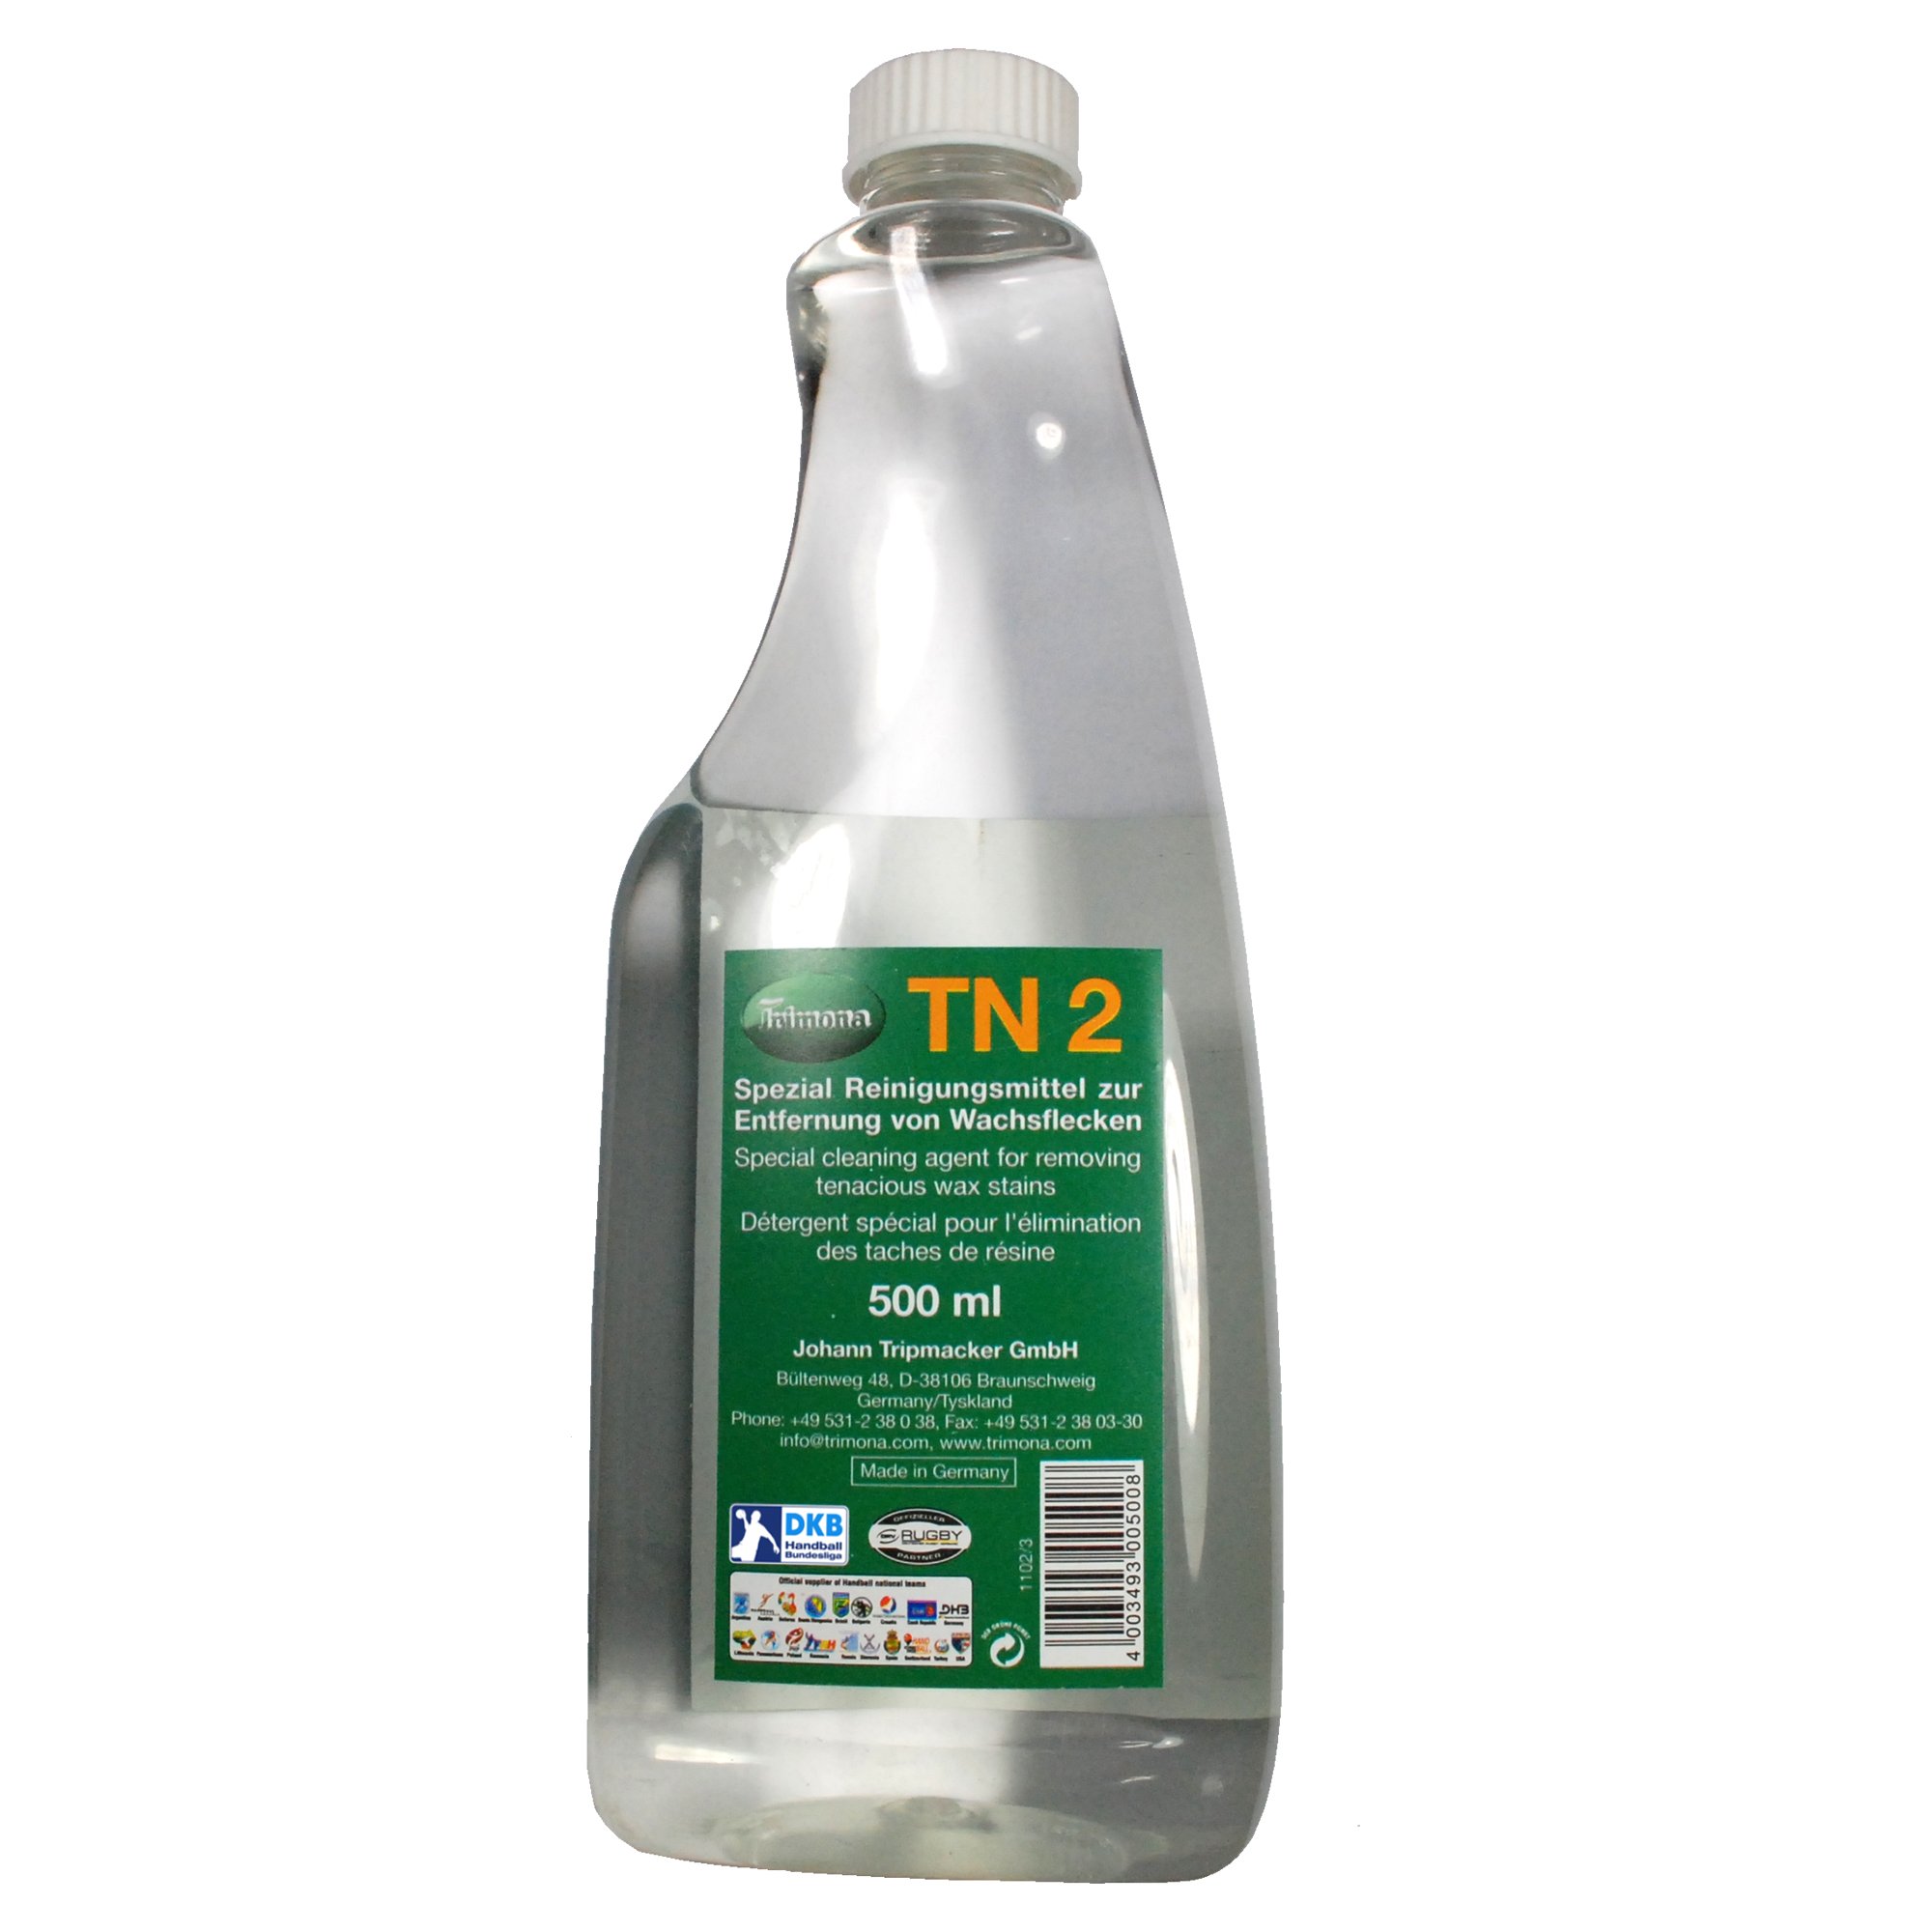 Trimona TN2 Reinigungsmittel für Harzreste